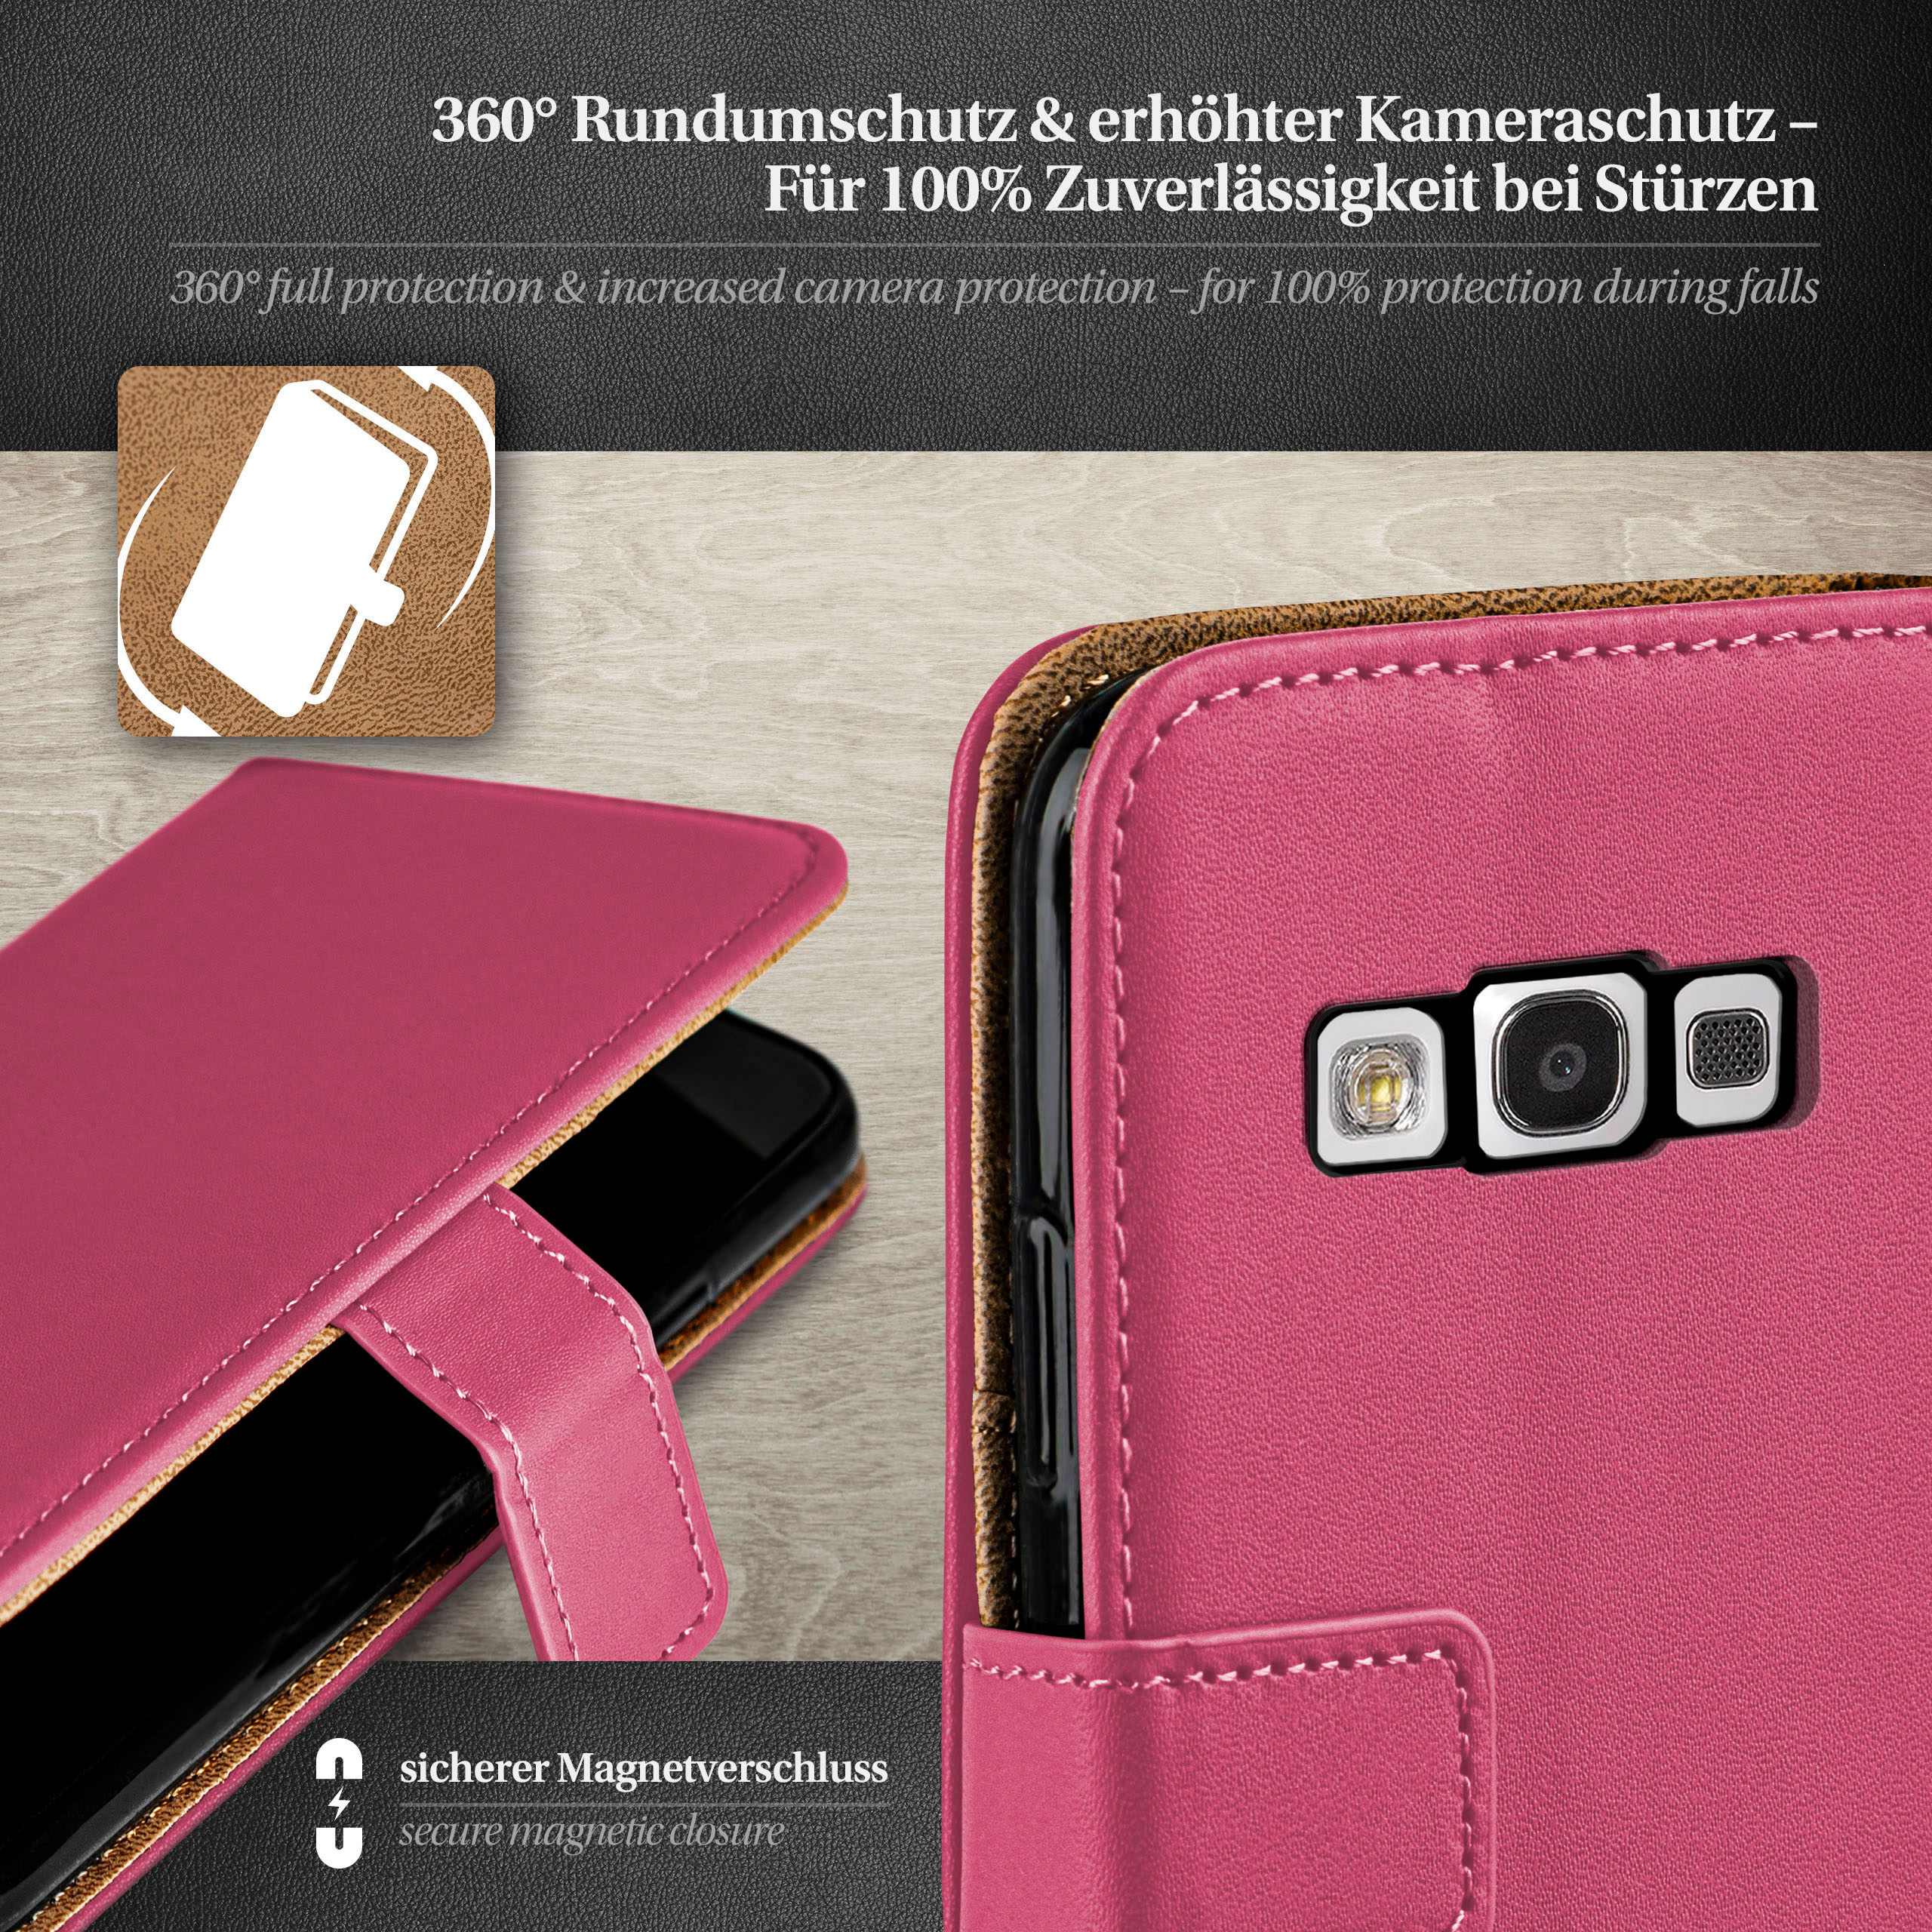 Samsung, S3 Case, Bookcover, Galaxy / S3 MOEX Book Berry-Fuchsia Neo,